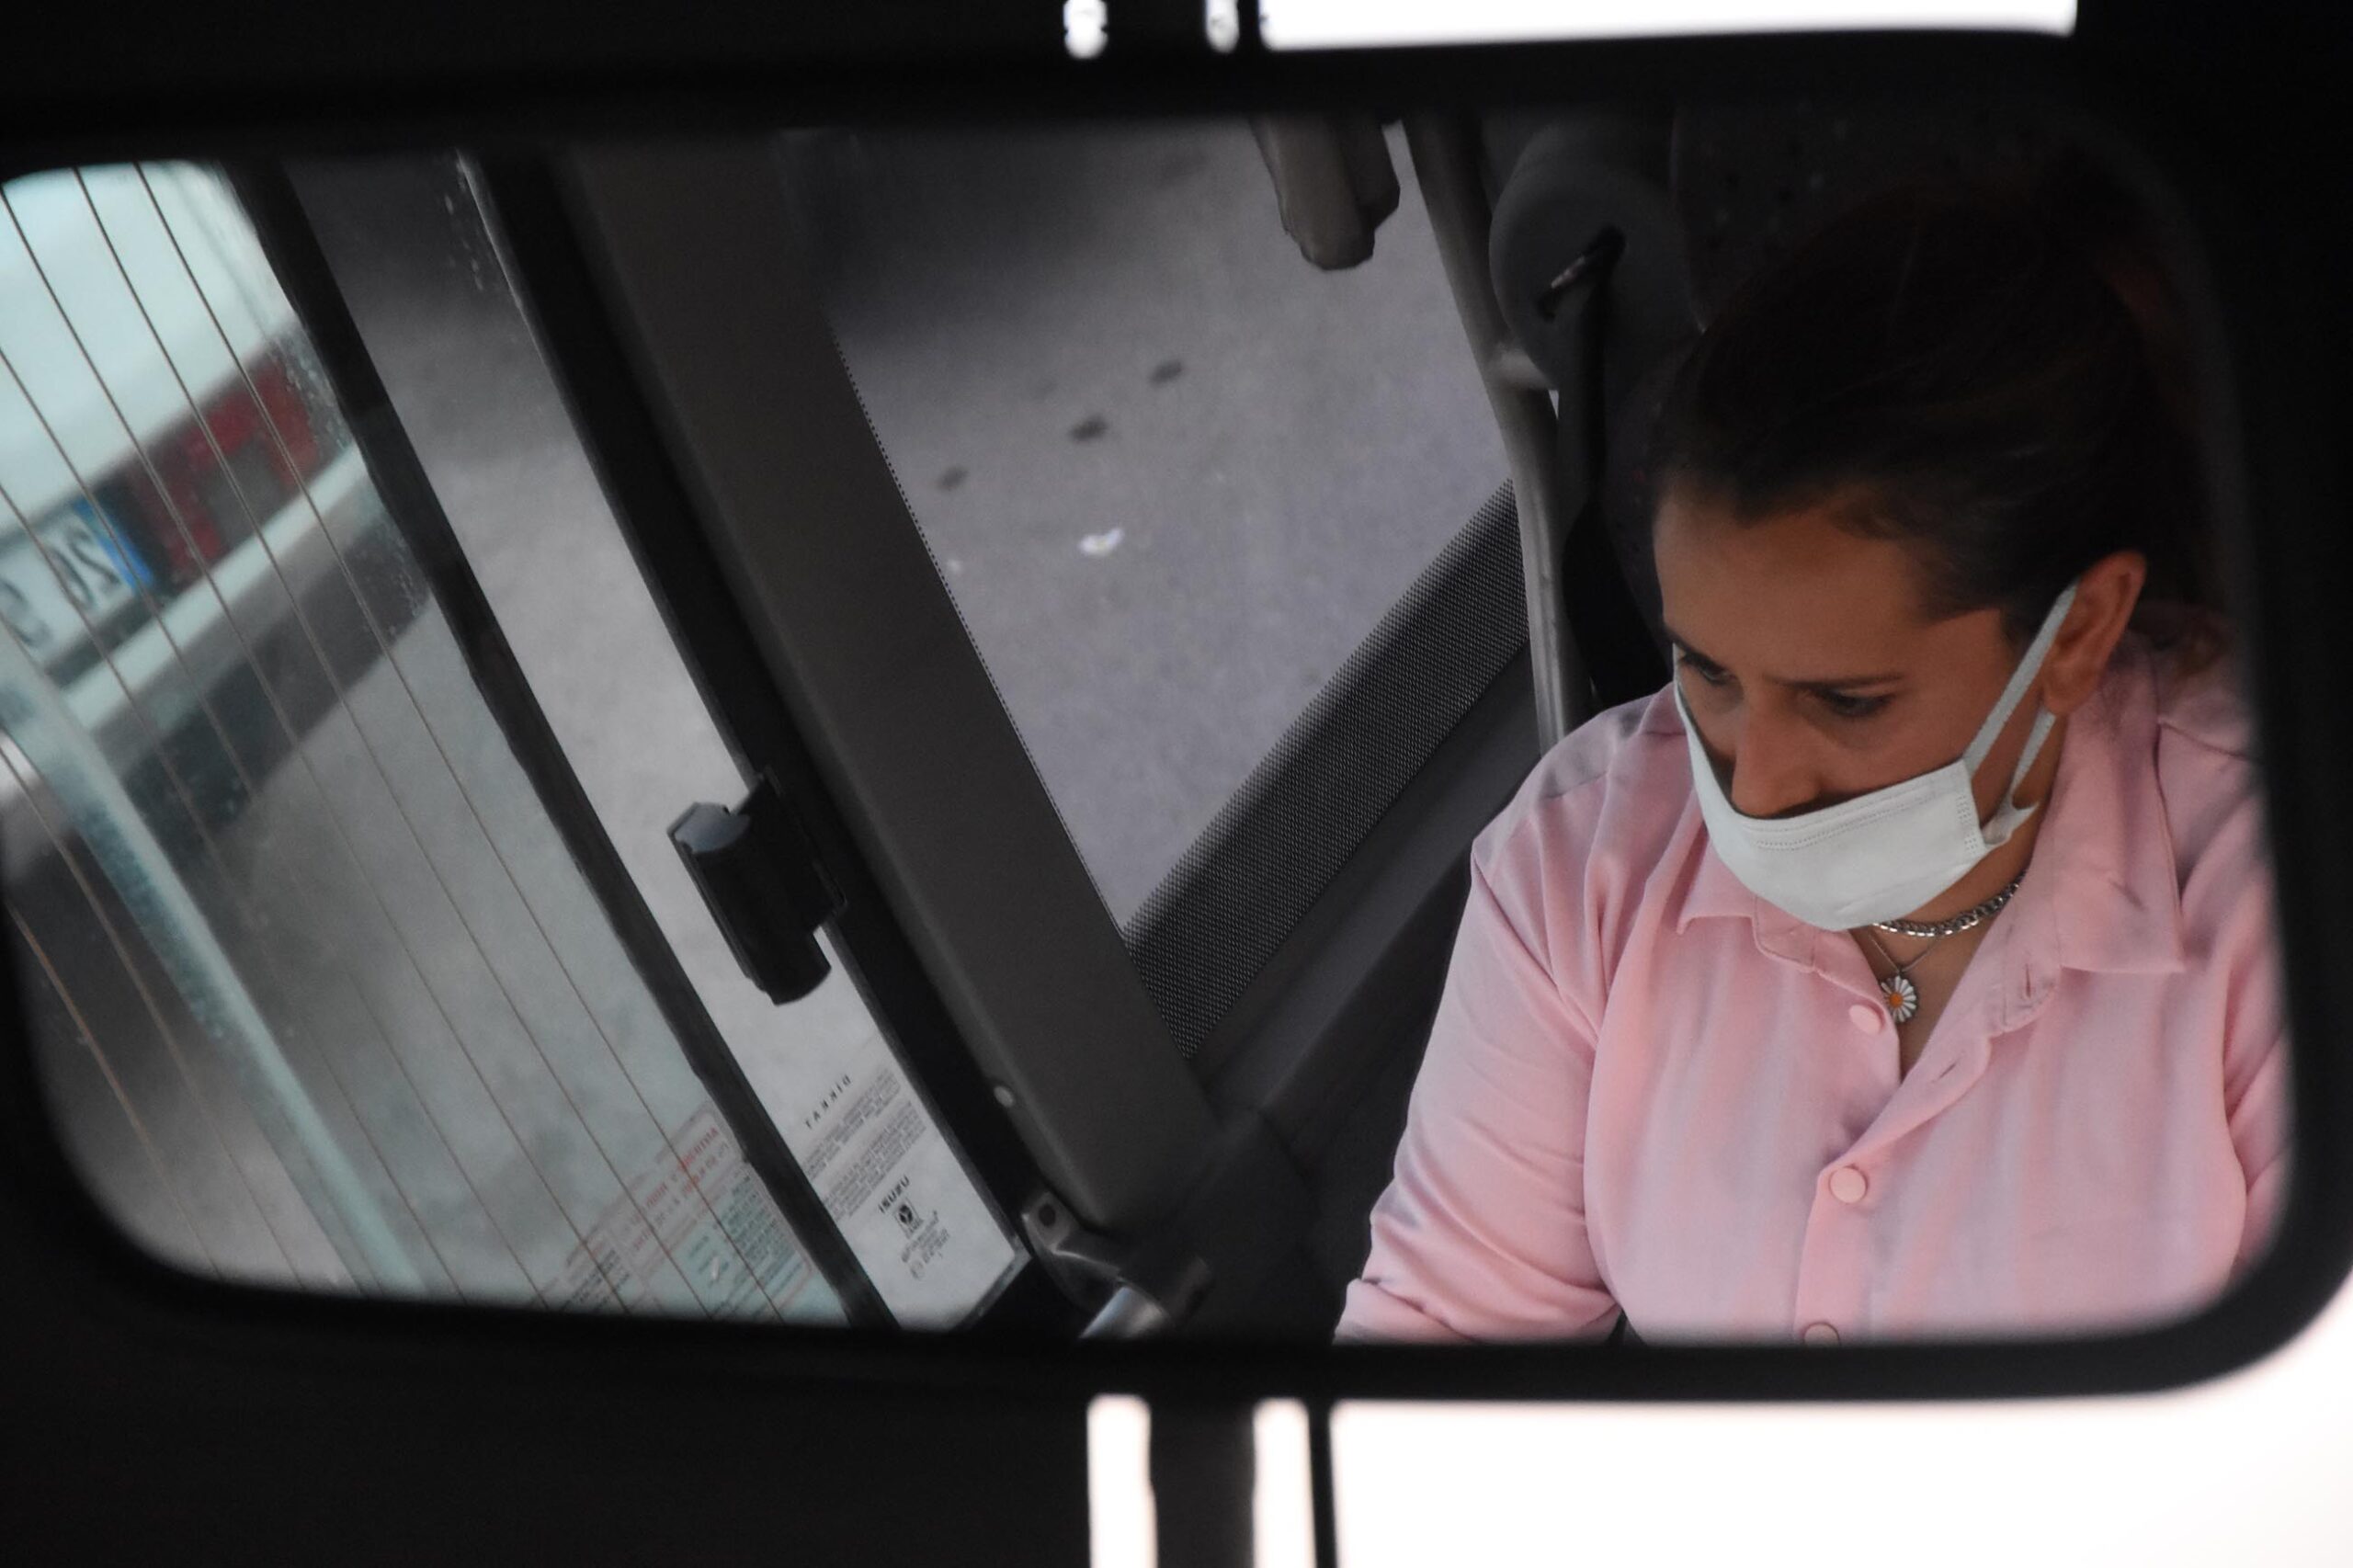 Kütahya’nın ilk kadın halk otobüsü şoförü oldu